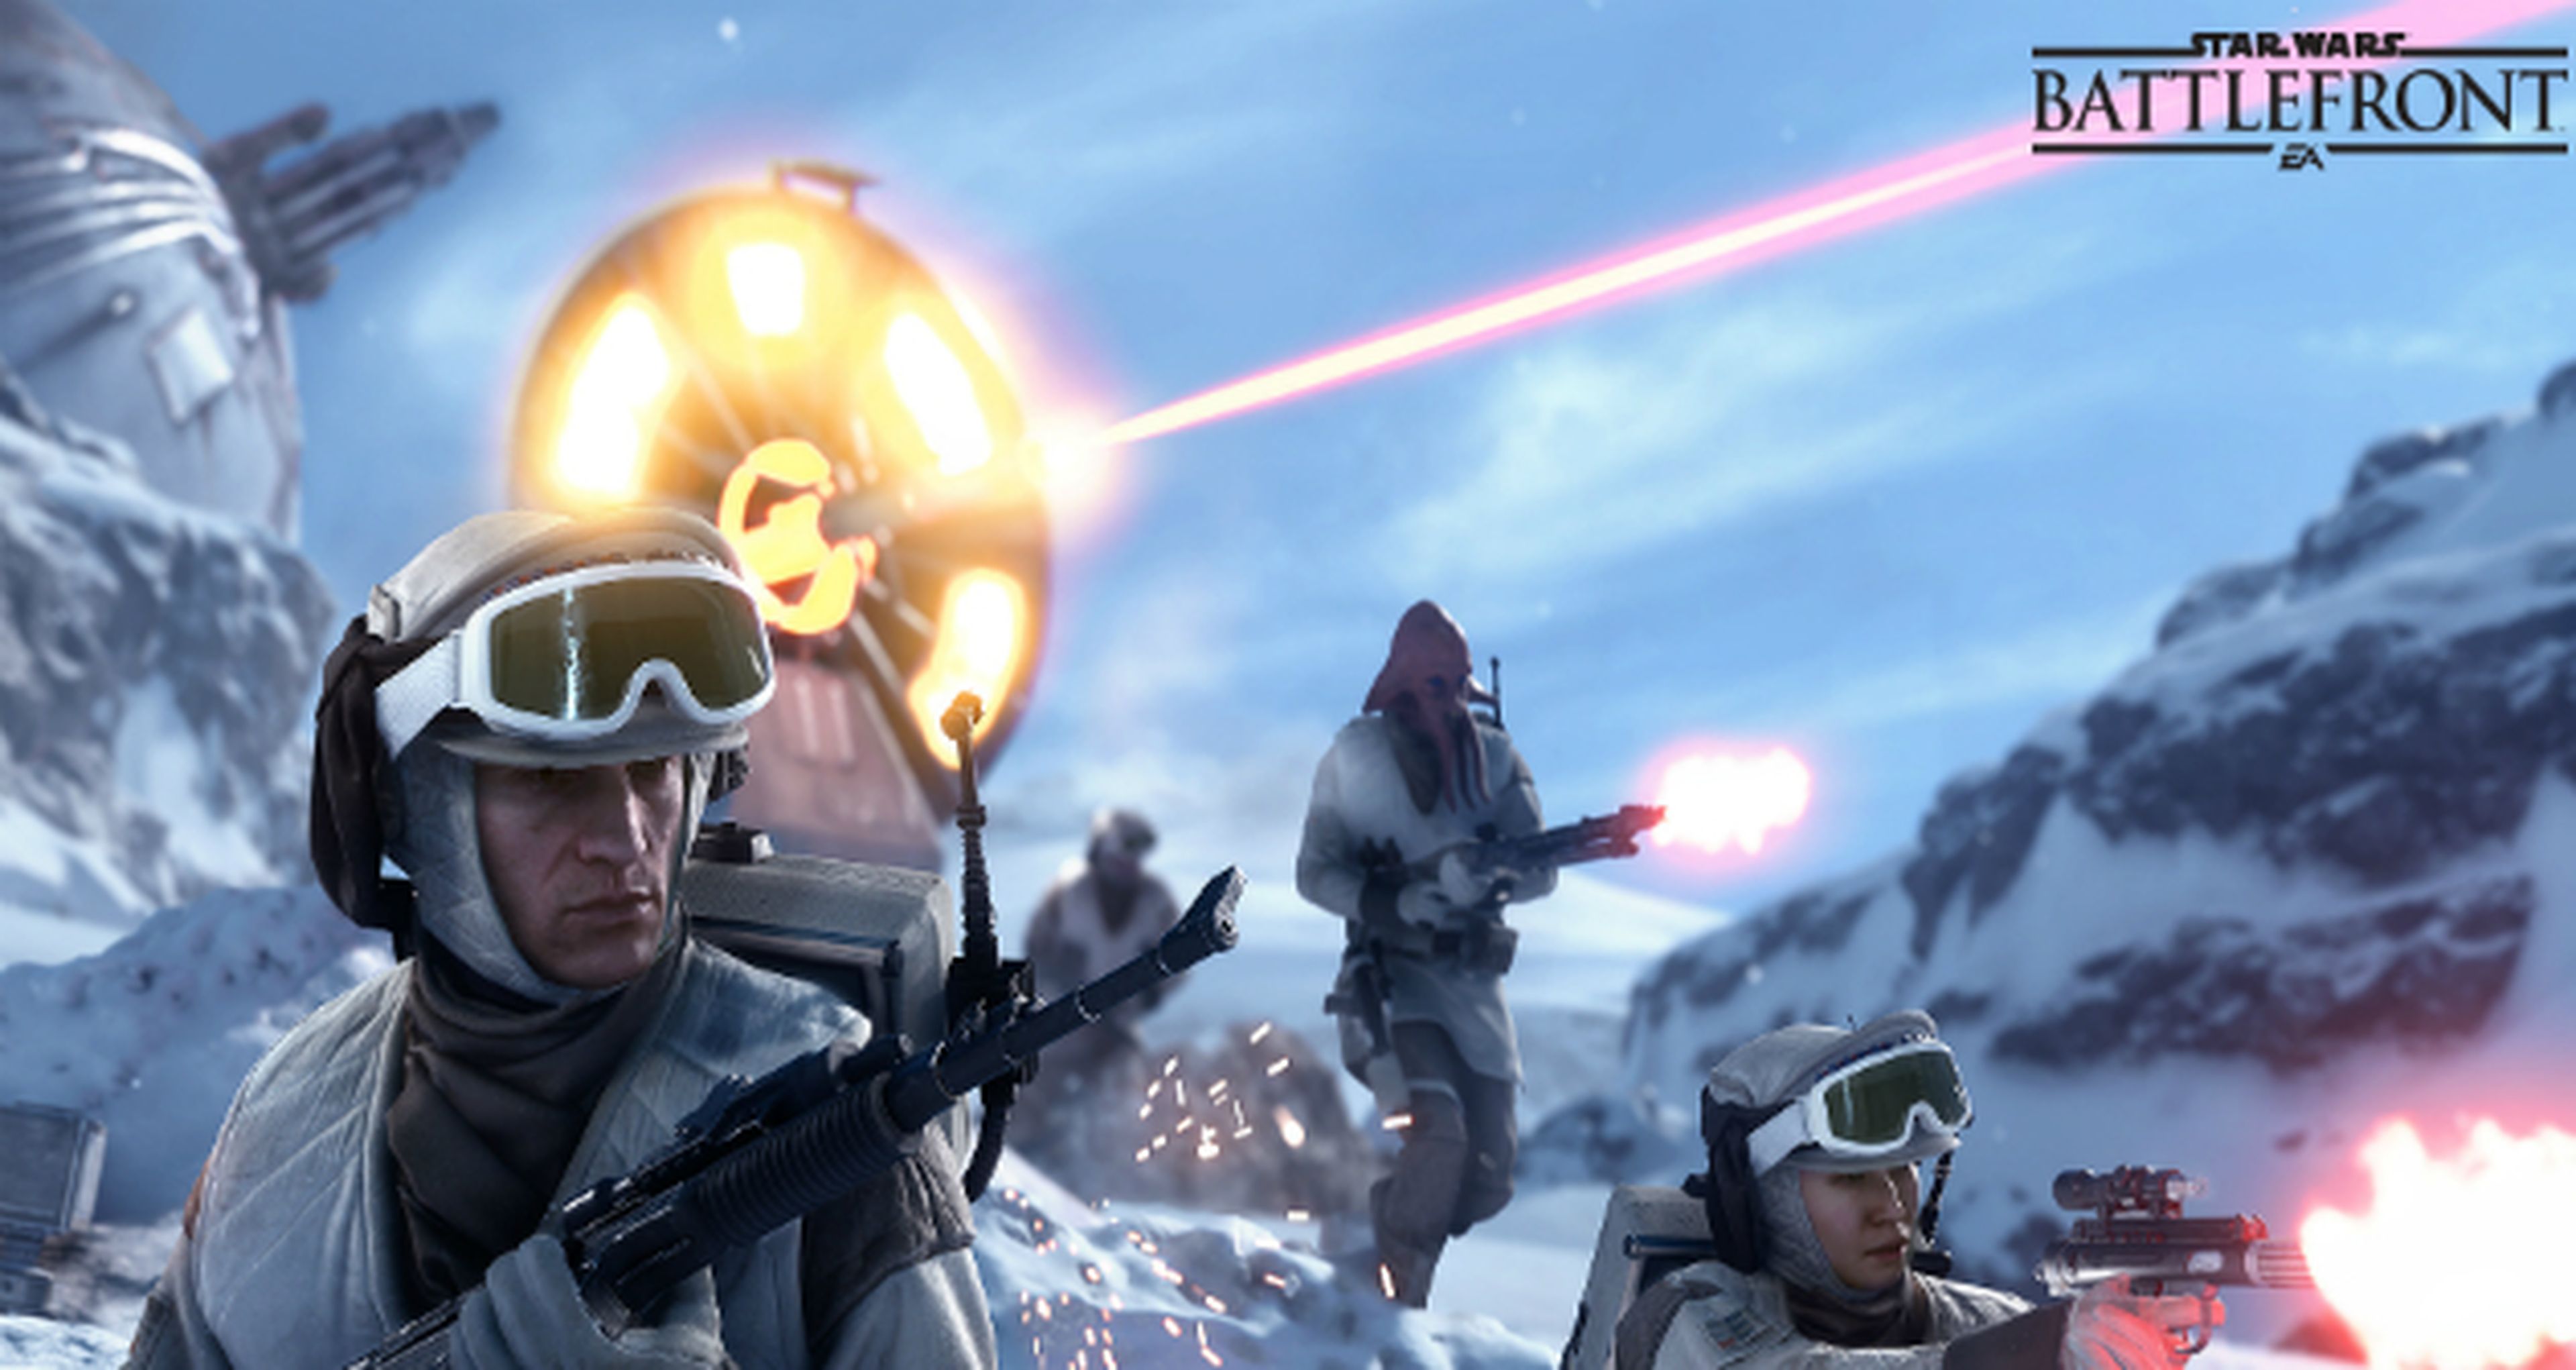 Star Wars Battlefront, nuevos detalles sobre su pase de temporada